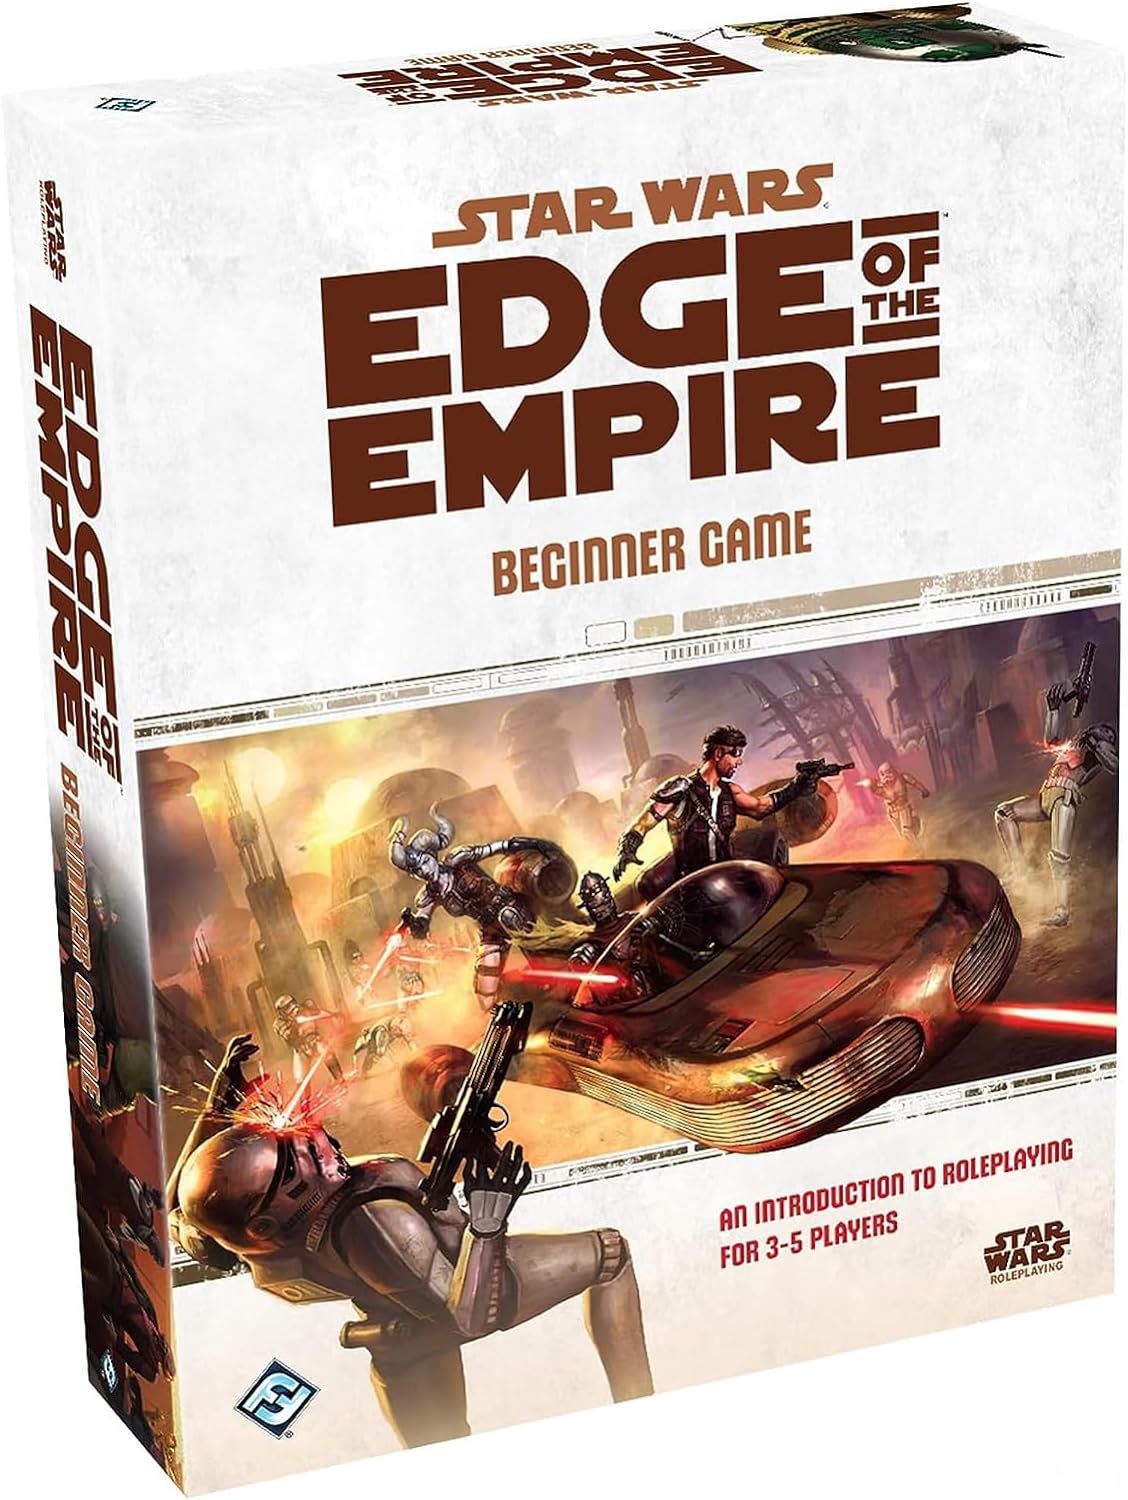 La pochette d'Edge of the Empire montre des canailles dans un speeder éliminant des stormtroopers en mouvement.